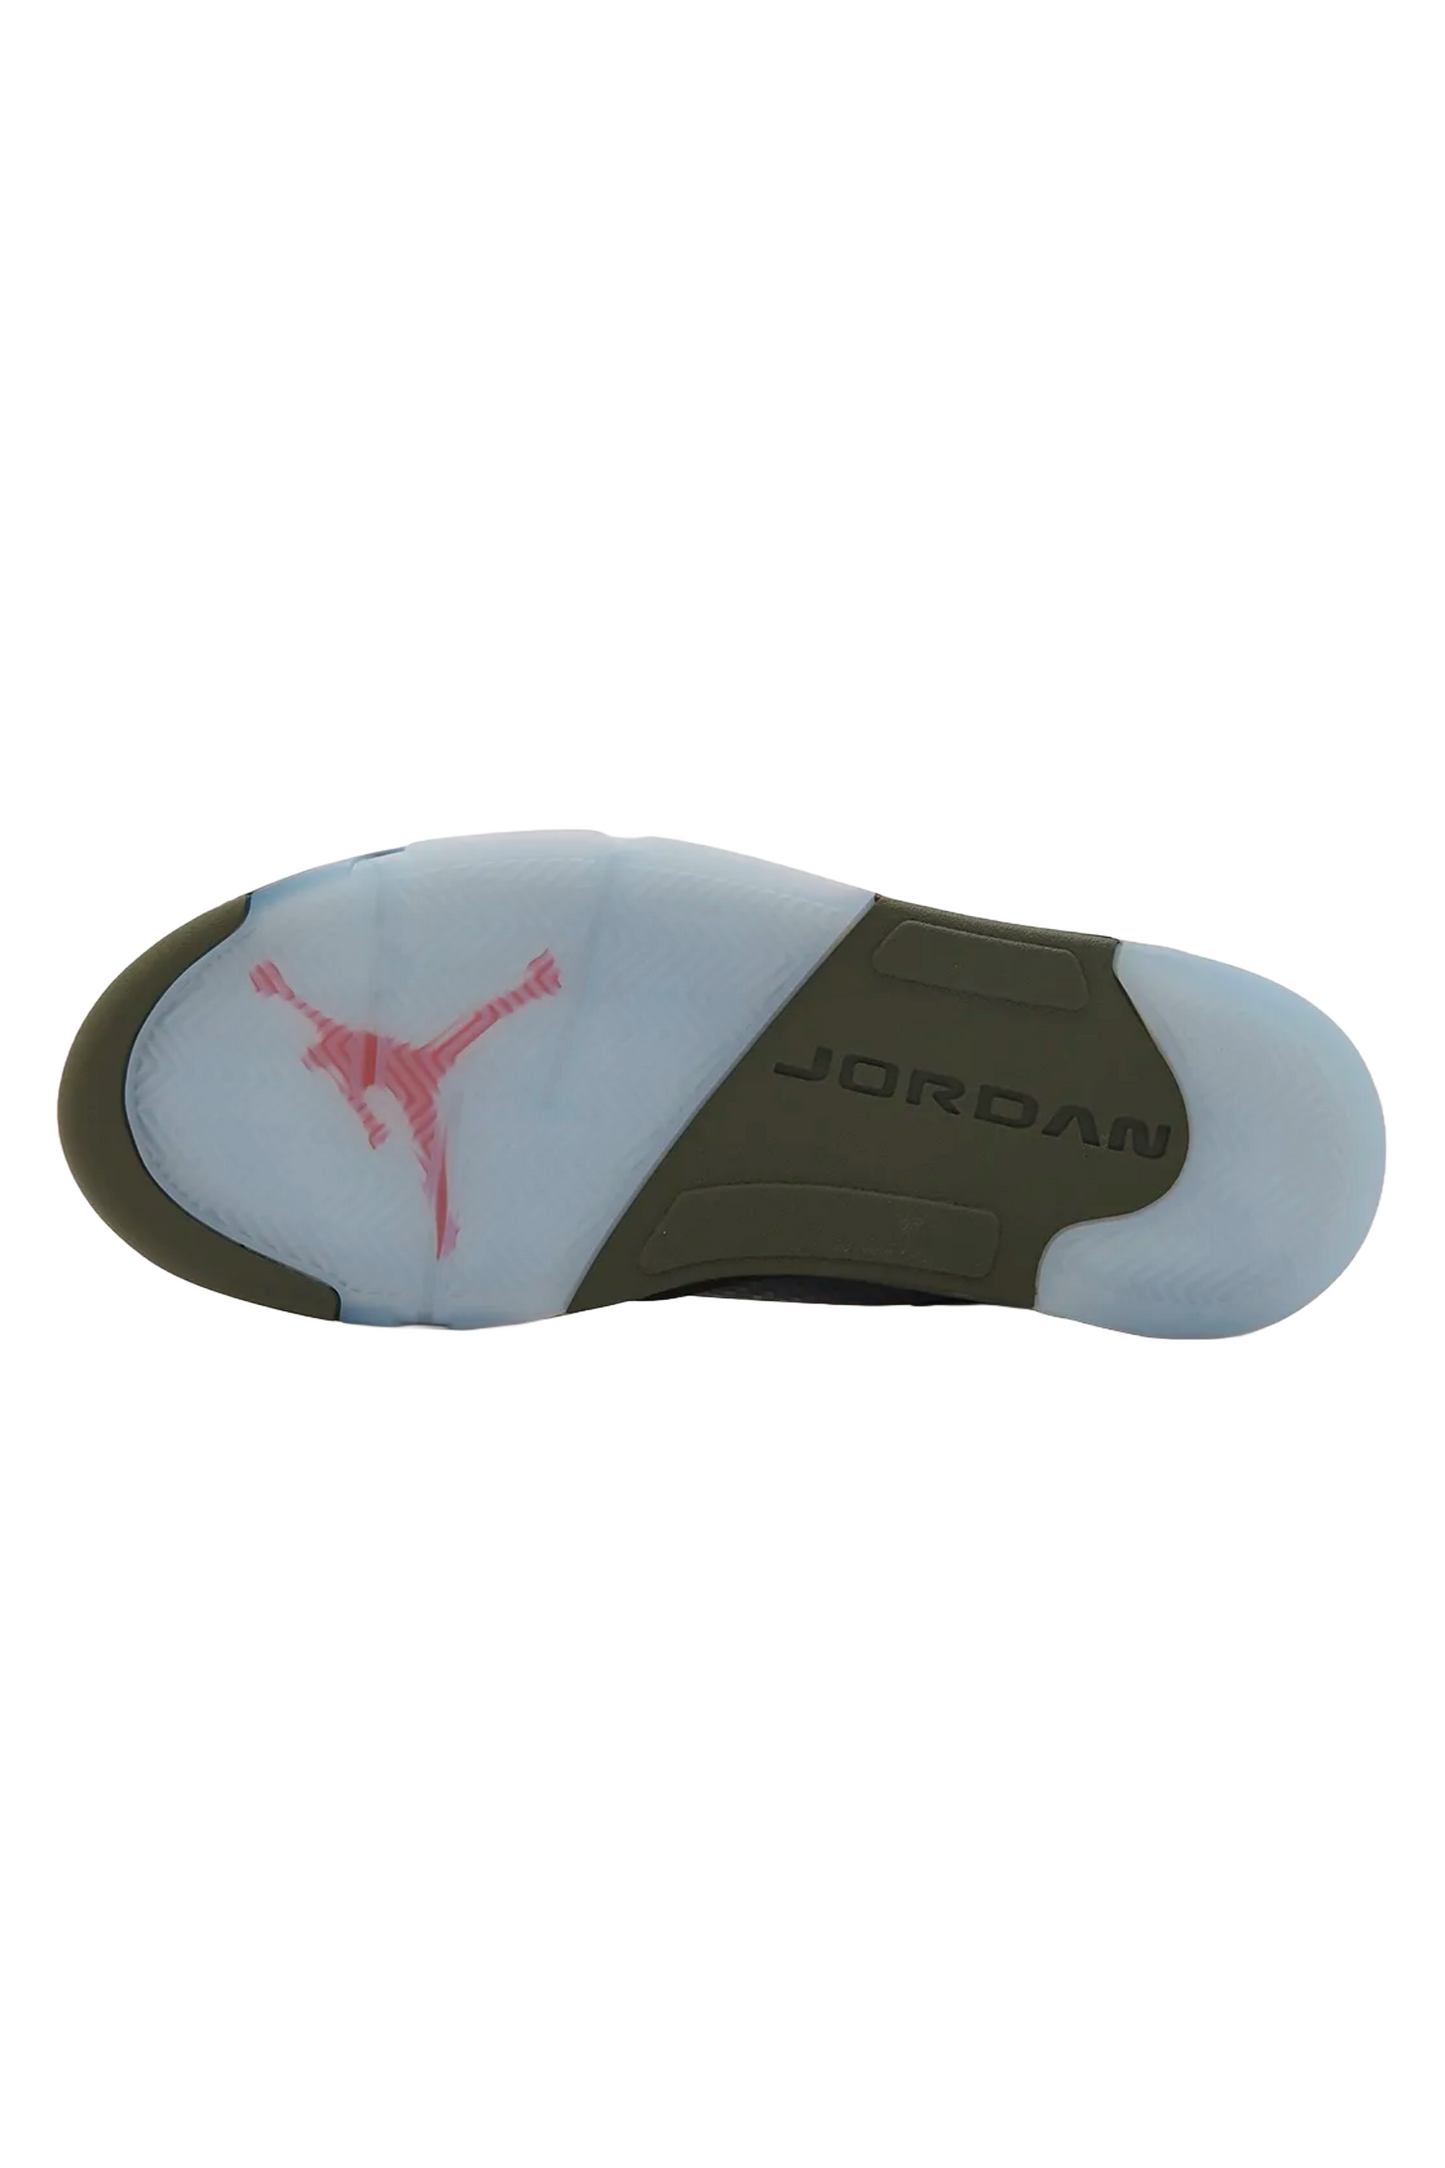 Air Jordan 5 “Olive”